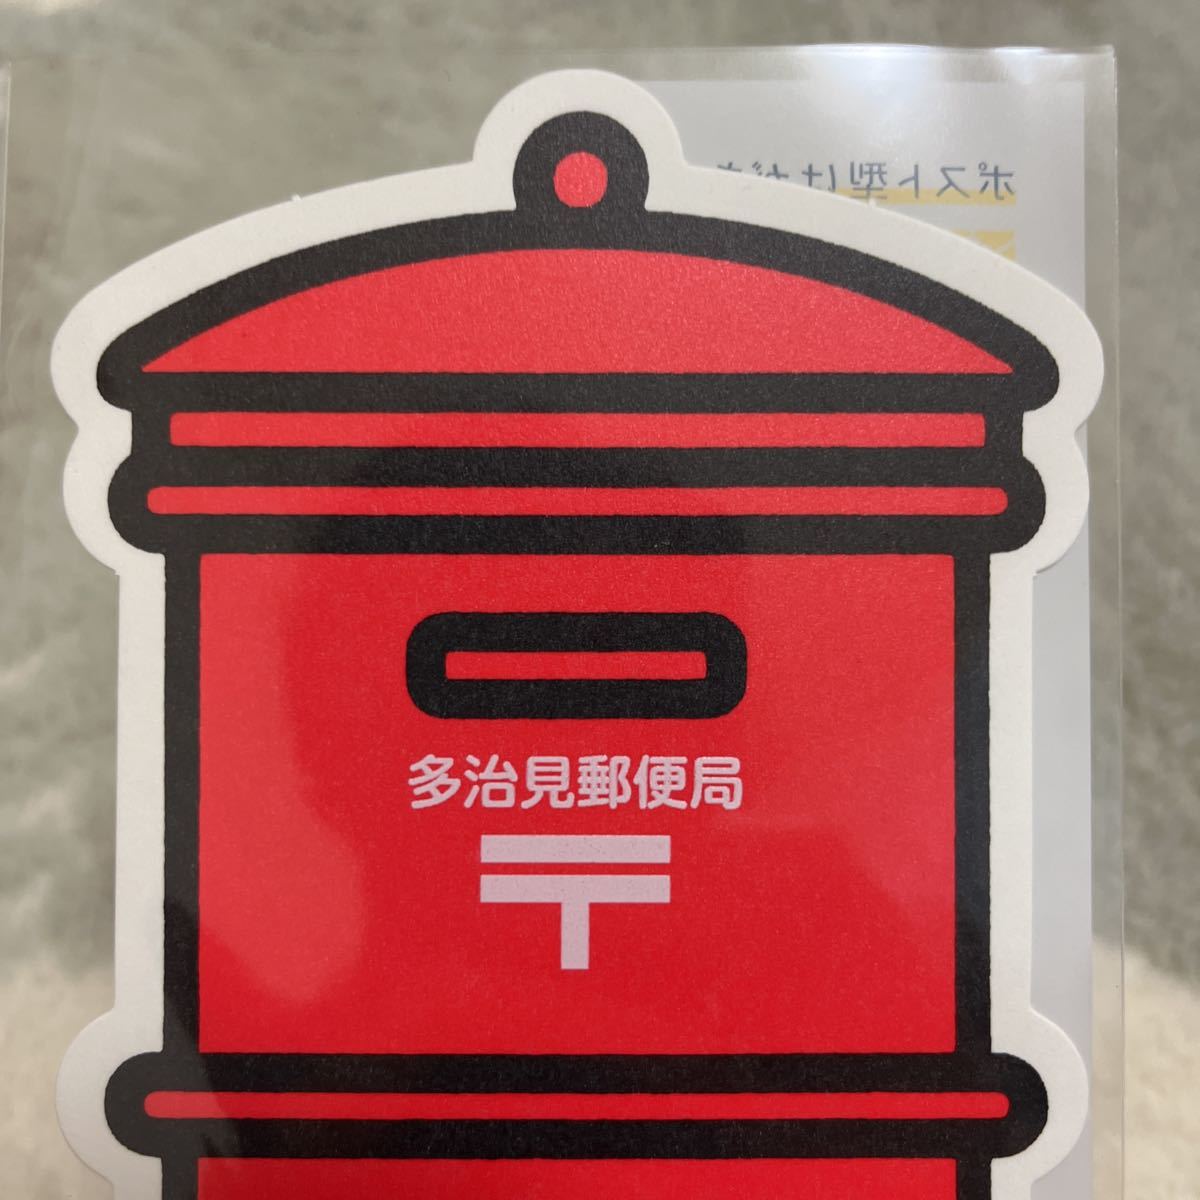 日本郵便 ハロウィンのポスト型はがき 2016